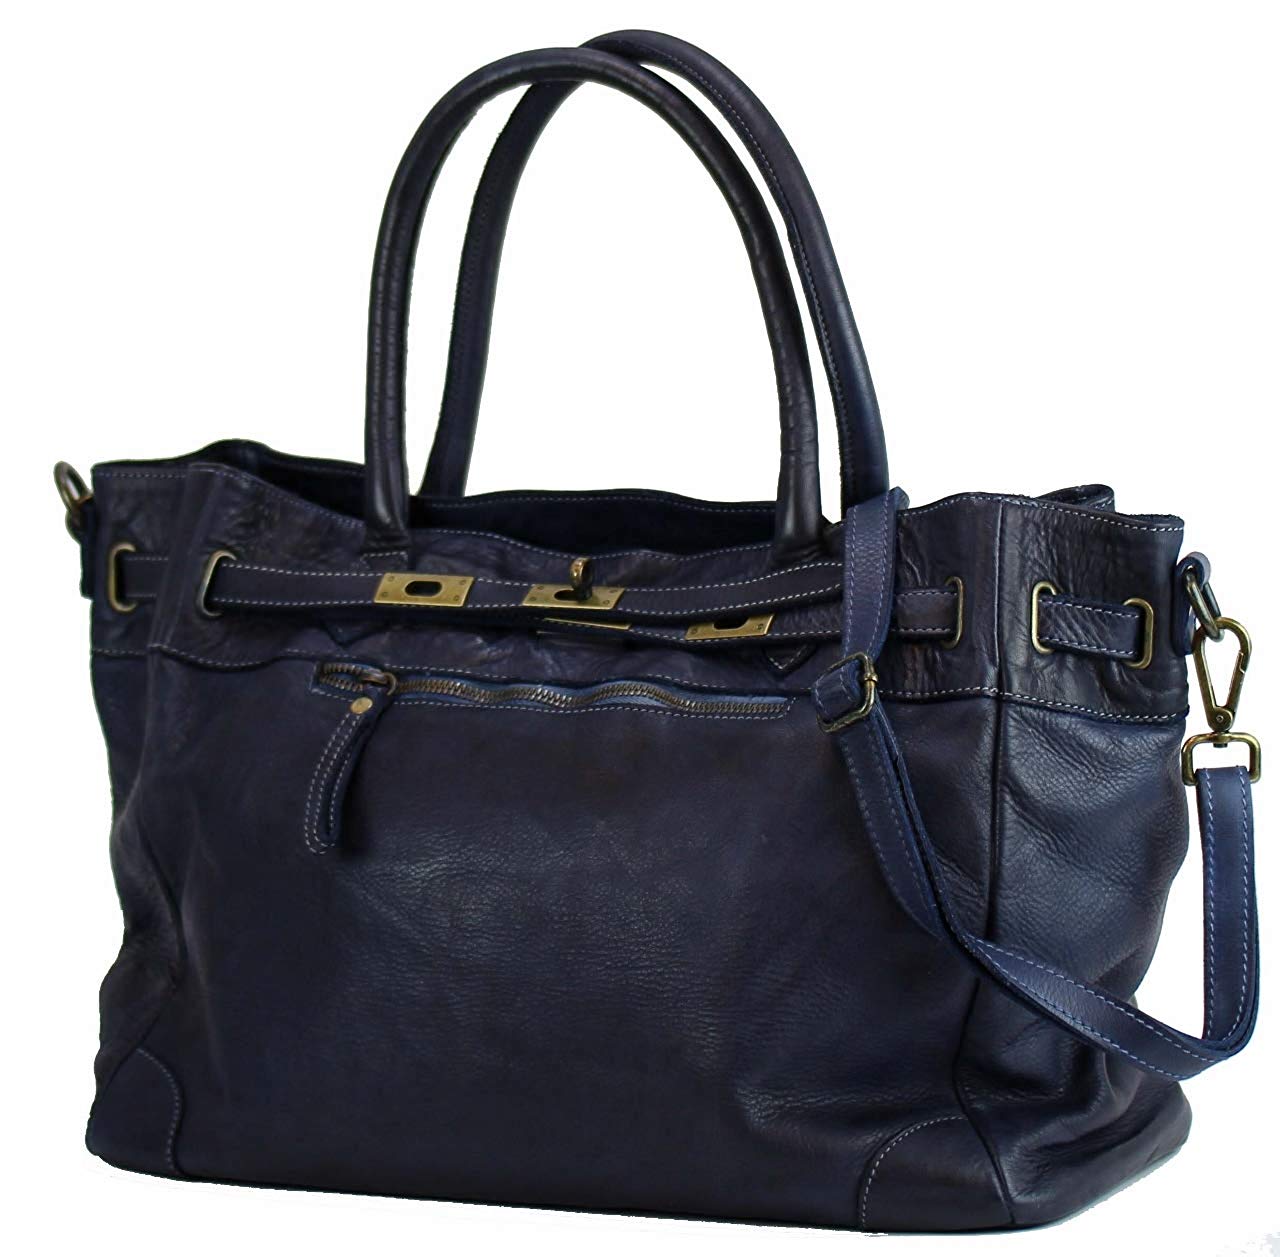 BZNA Bag Mila Blau navy vintage Italy Designer Business Damen Handtasche Ledertasche Schultertasche Tasche Leder Shopper Neu